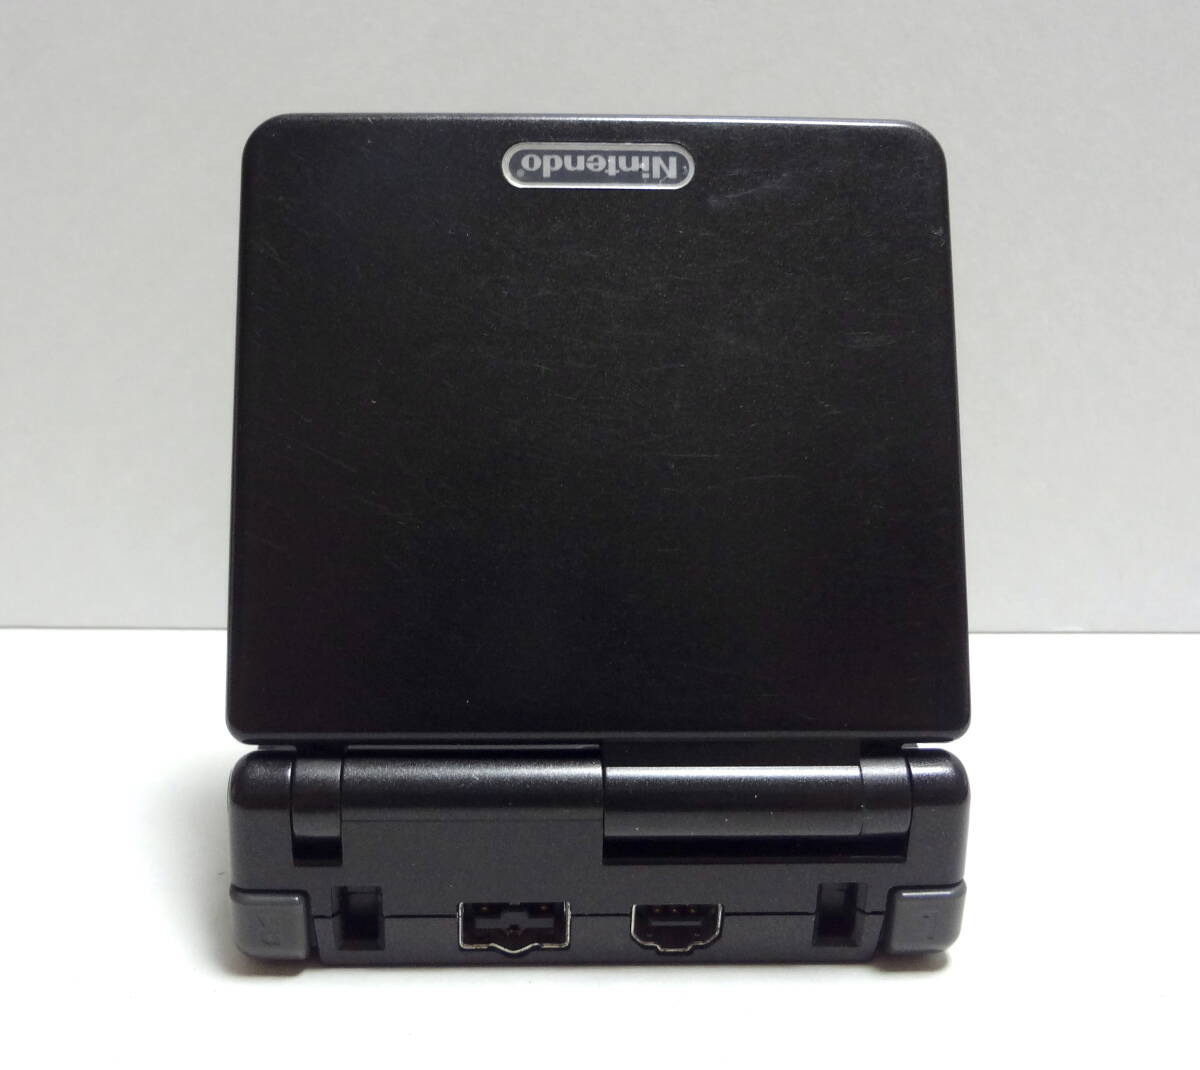 [5 месяц до конца! время ограничено лот ] nintendo Game Boy Advance SP черный чёрный корпус + зарядное устройство в комплекте 